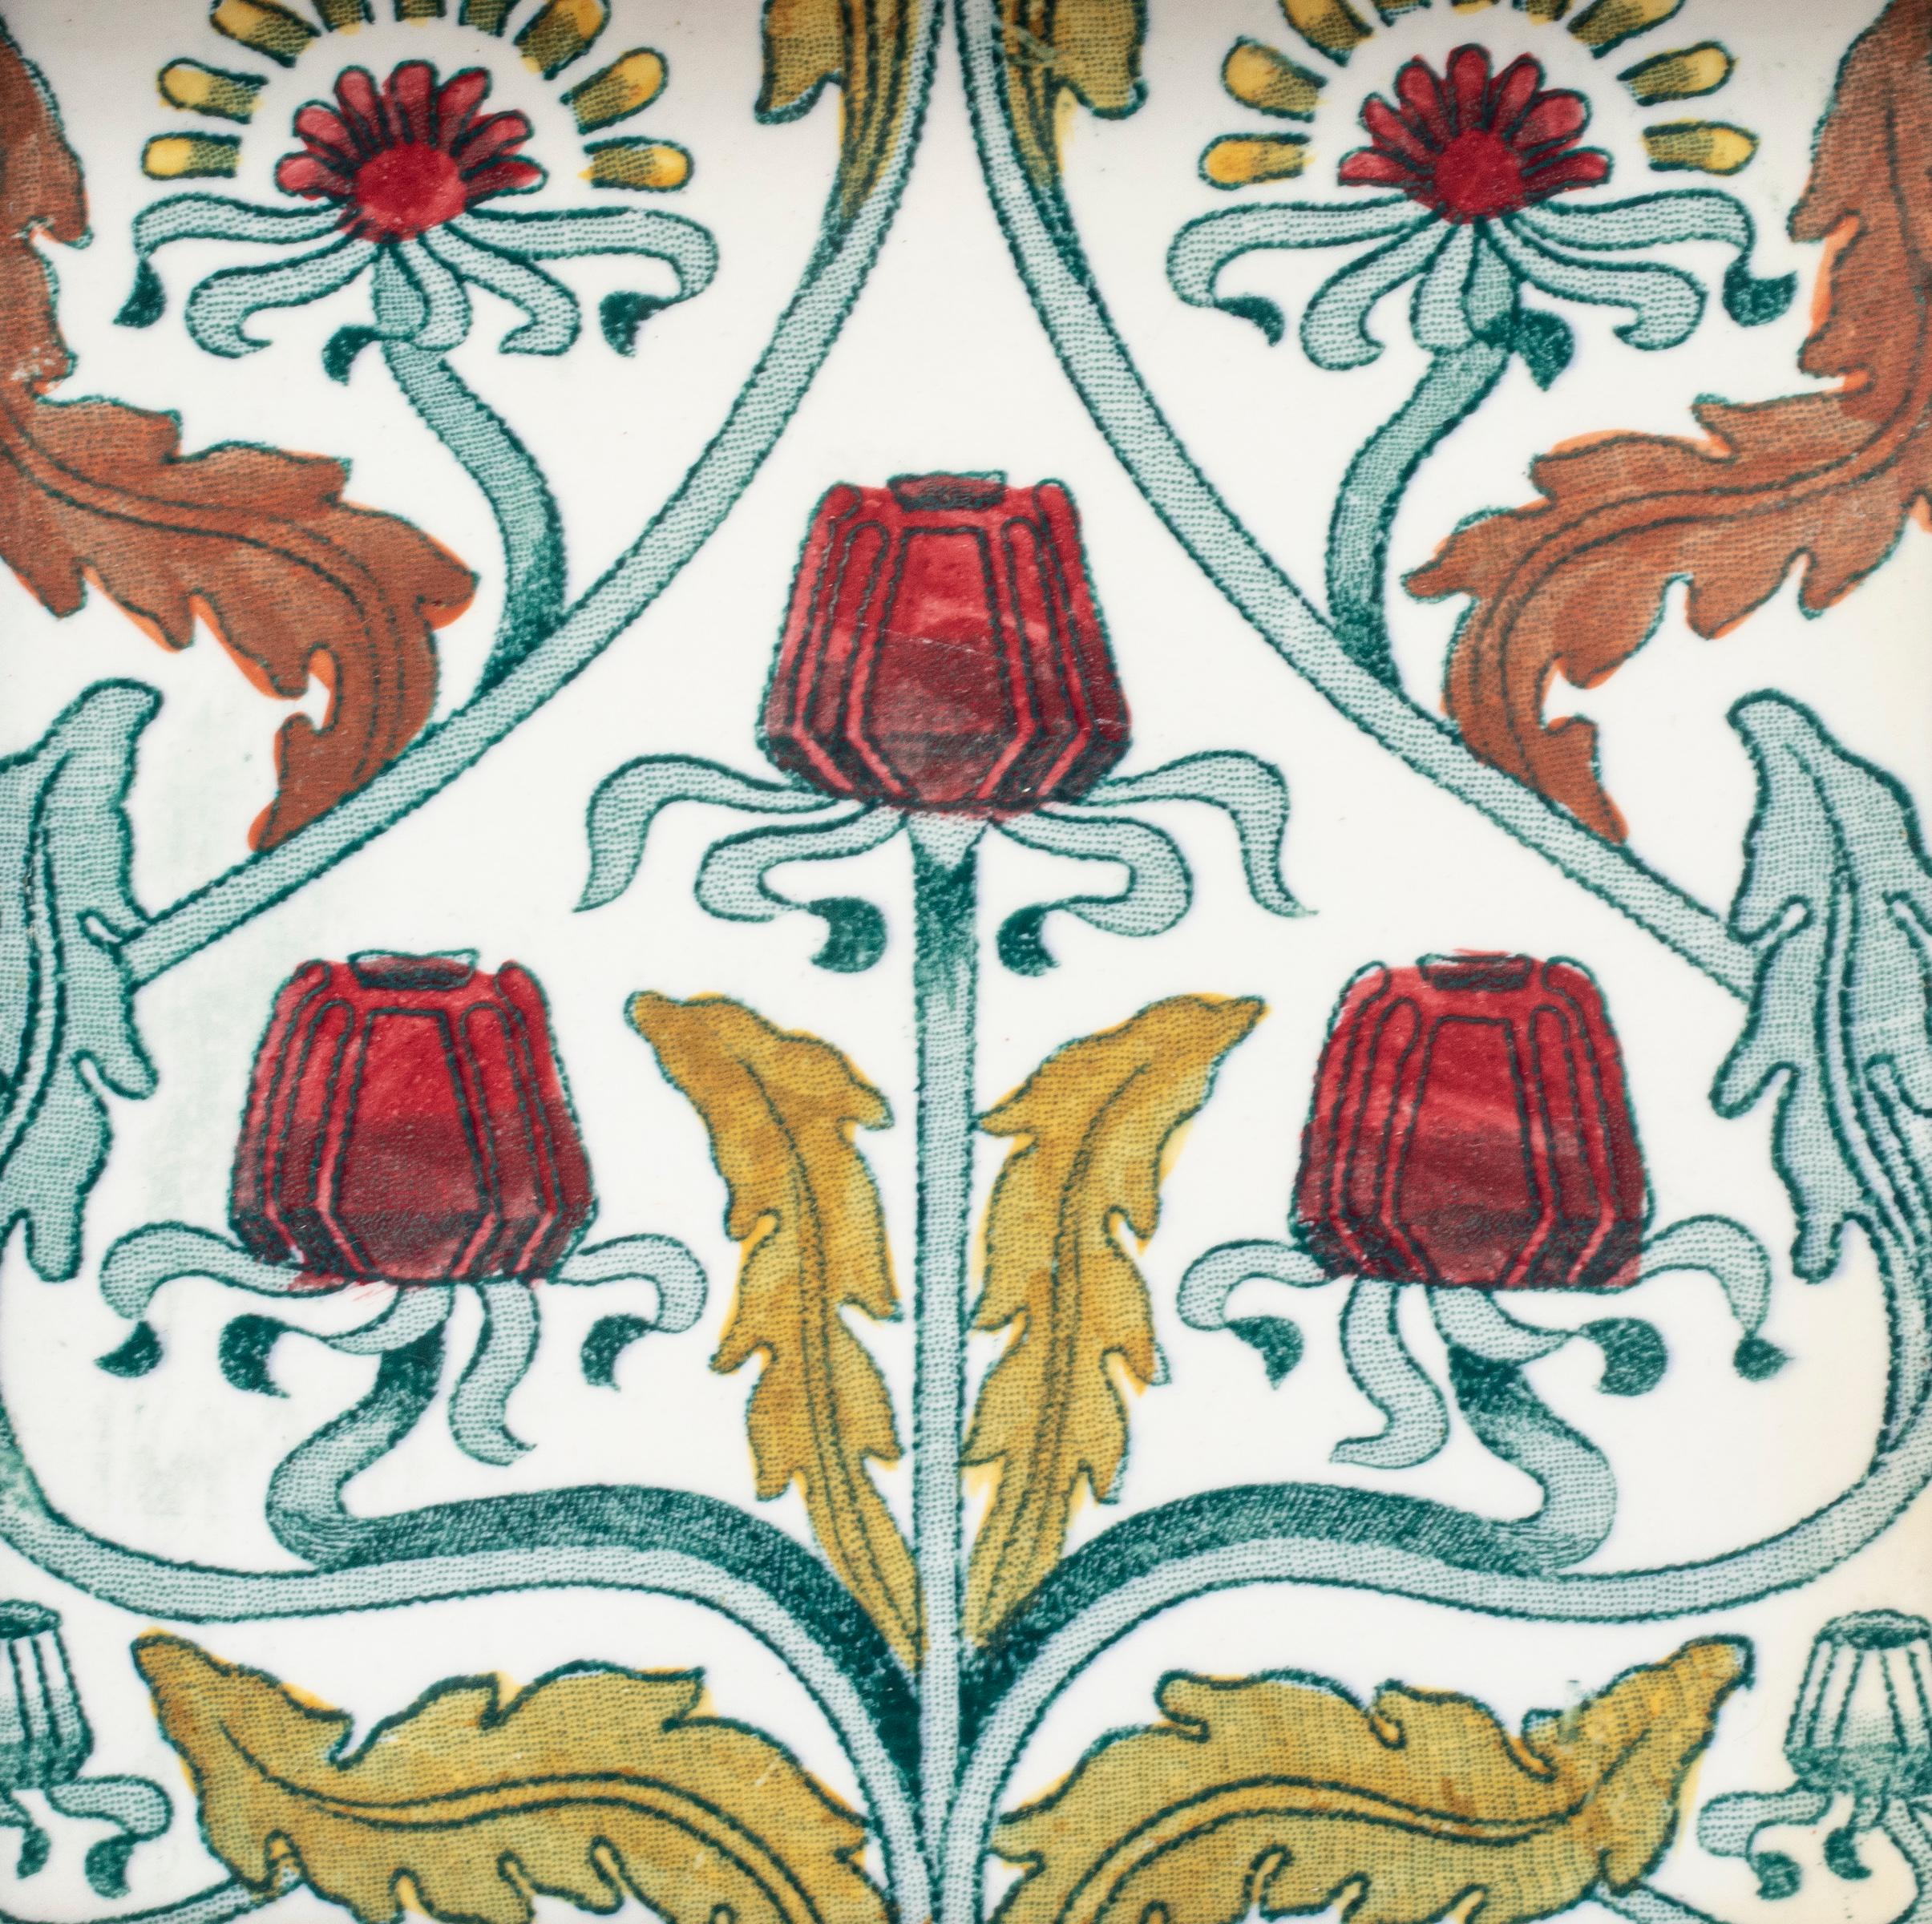 Carreau de poterie Arts et Métiers anglais, fin XIXe-début XXe siècle, présentant un motif floral polychrome Art nouveau / Mouvement esthétique, dans un cadre en chêne. Carreau : 5.75